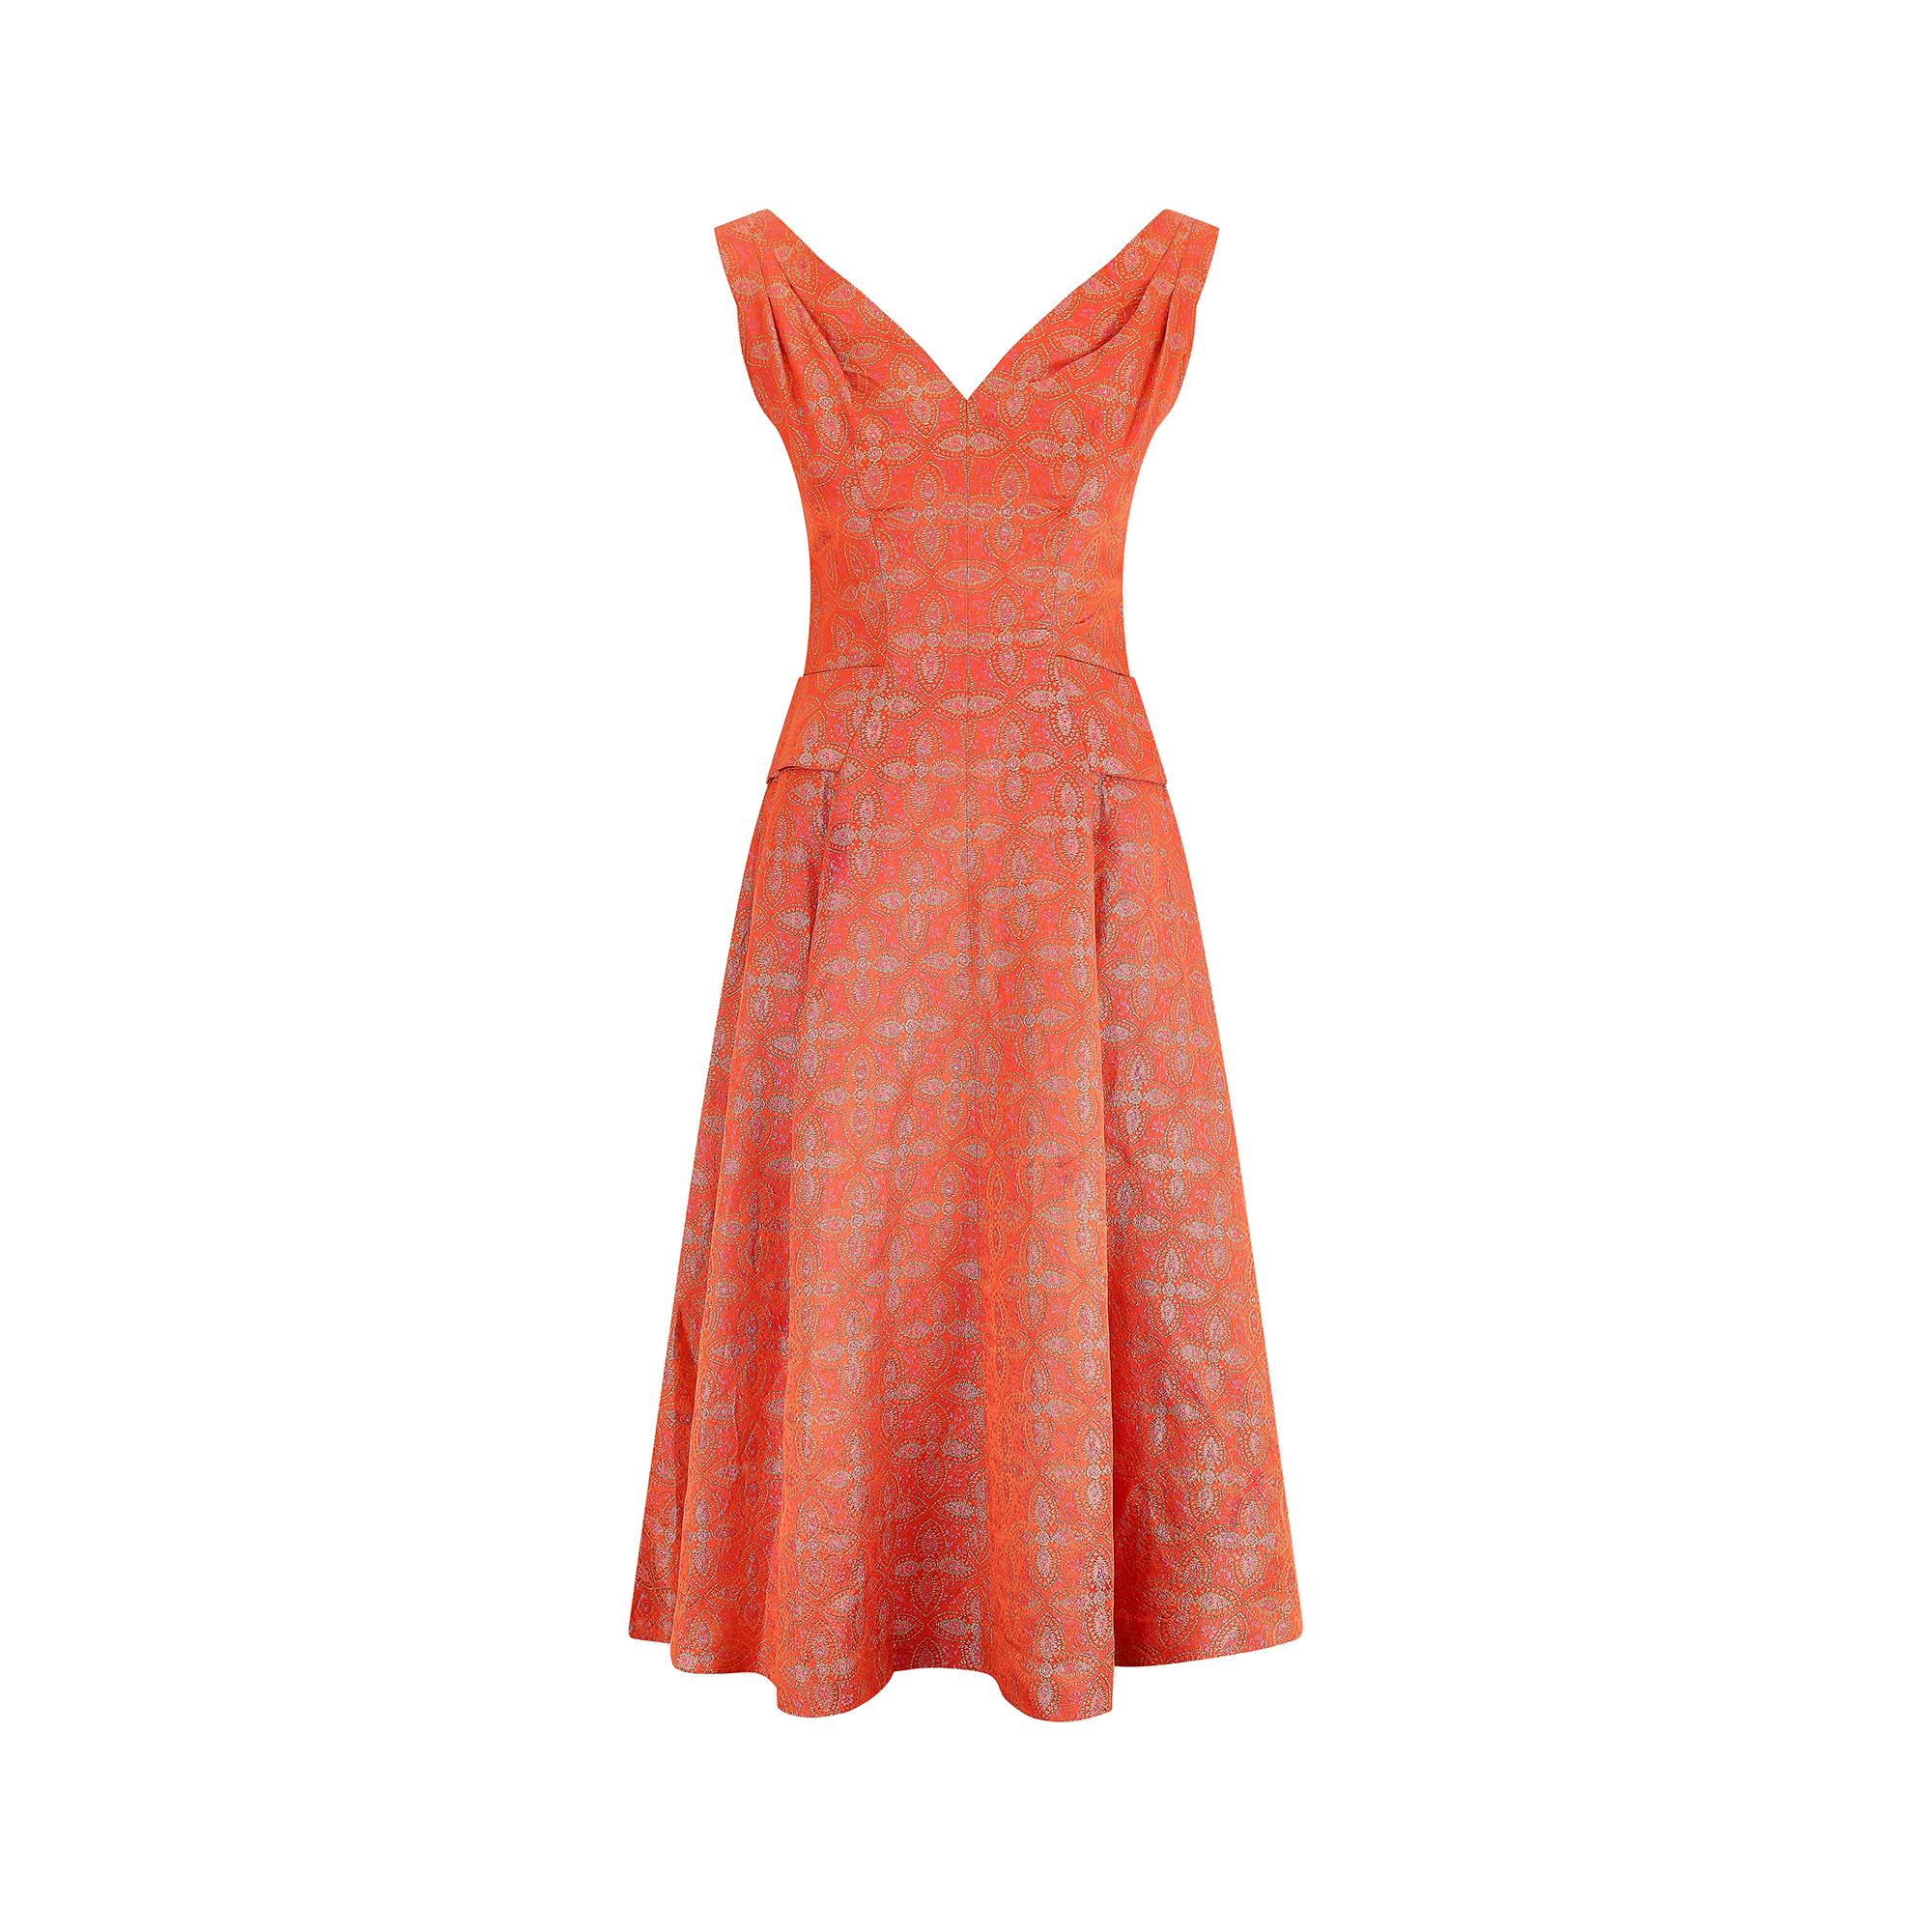 Cette robe d'occasion Hardy Amies demi-couture du milieu des années 1950 est confectionnée dans une matière somptueuse en brocart cachemire orange foncé avec des accents roses et dorés. Elle présente un décolleté en cœur, des épaules plissées et des